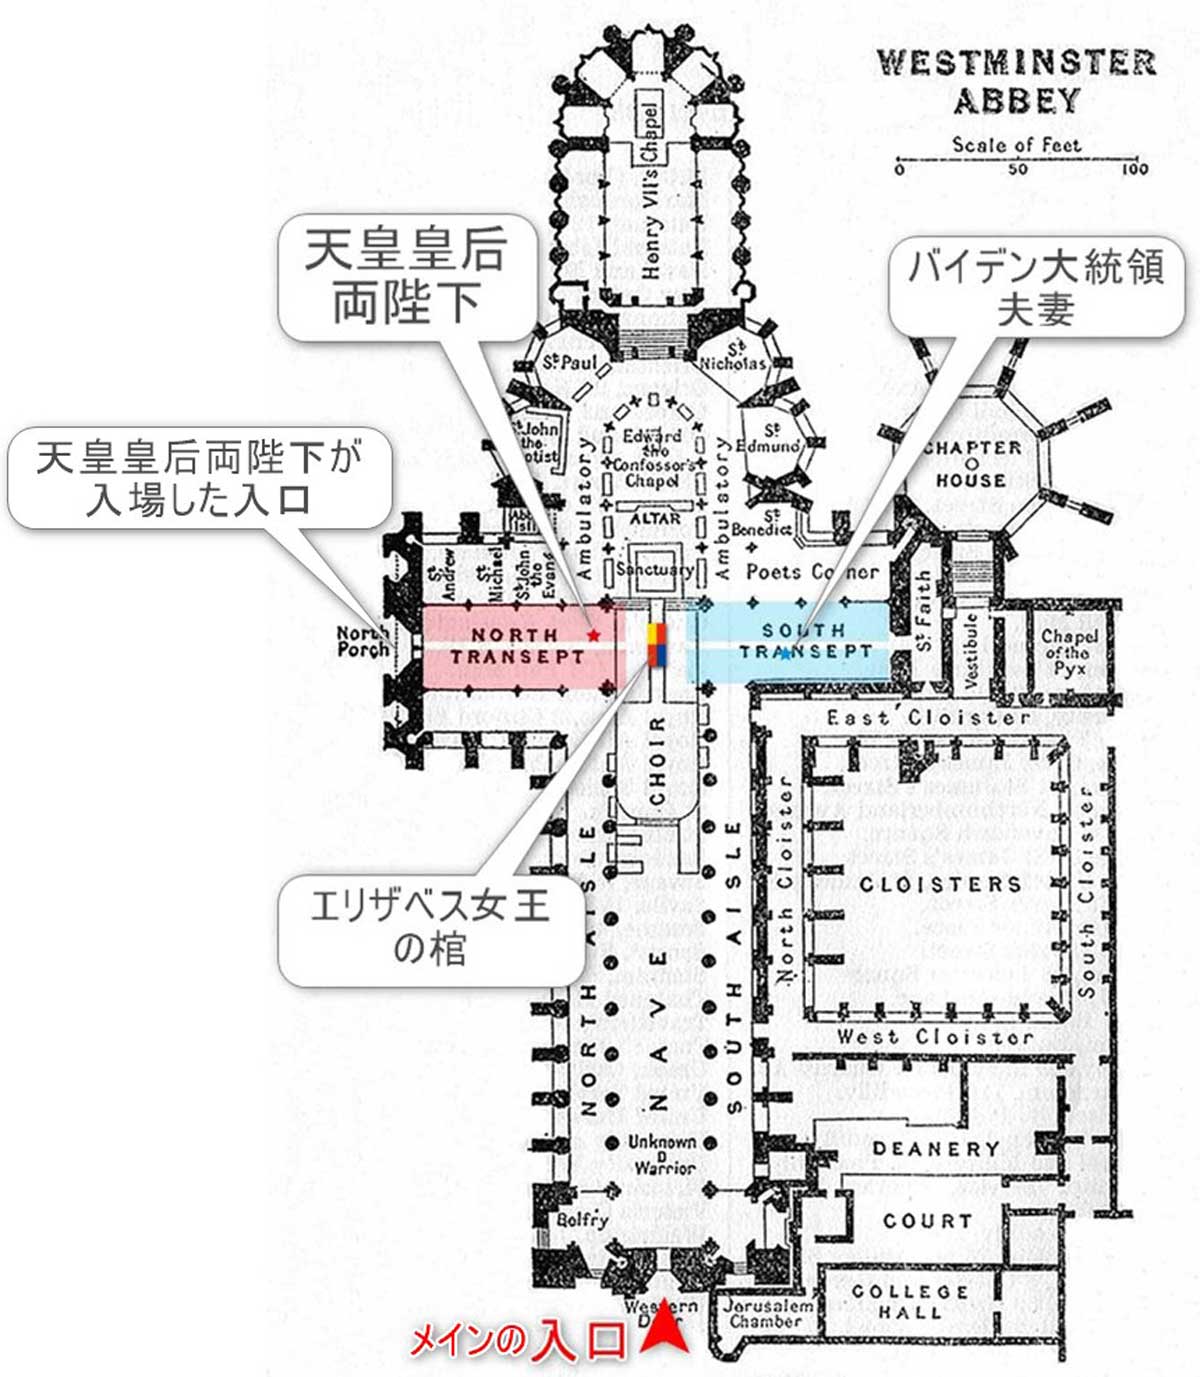 ウェストミンスター寺院の平面図